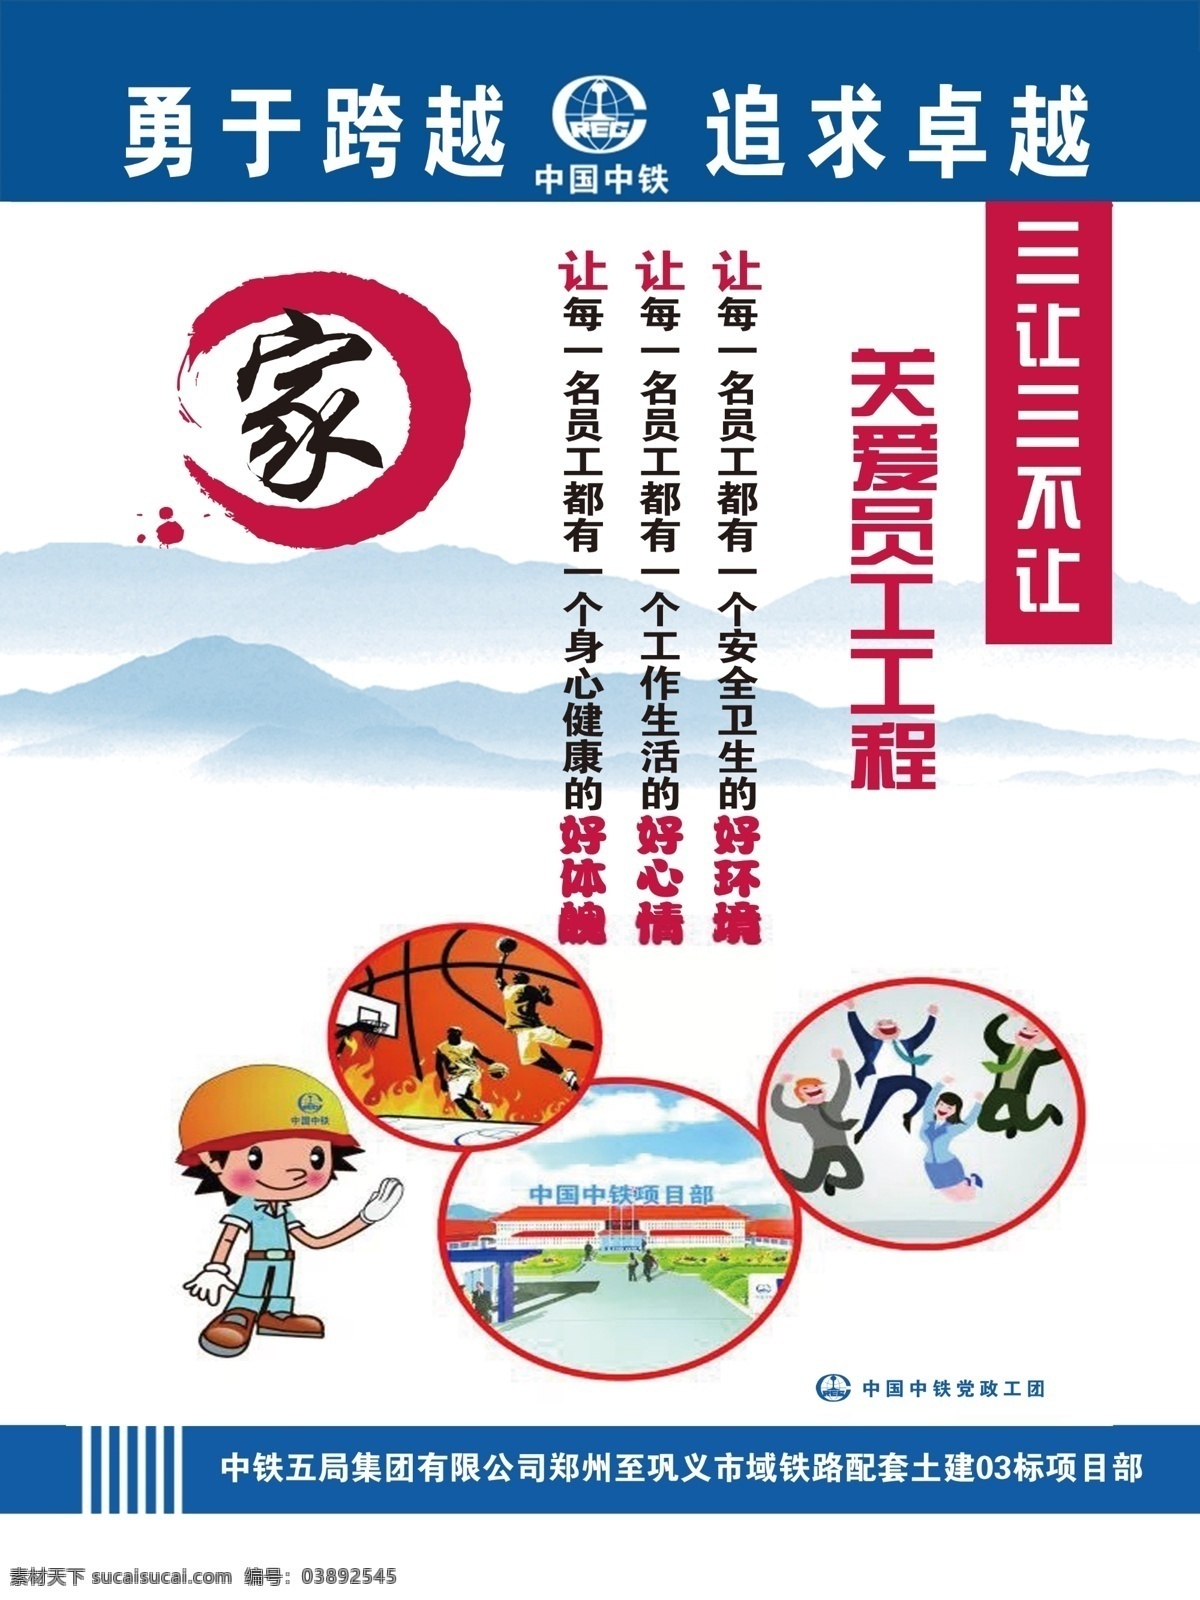 幸福之家 十个一工程 中国中铁 党政工团 勇于跨越 追求卓越 项目部 展板 海报